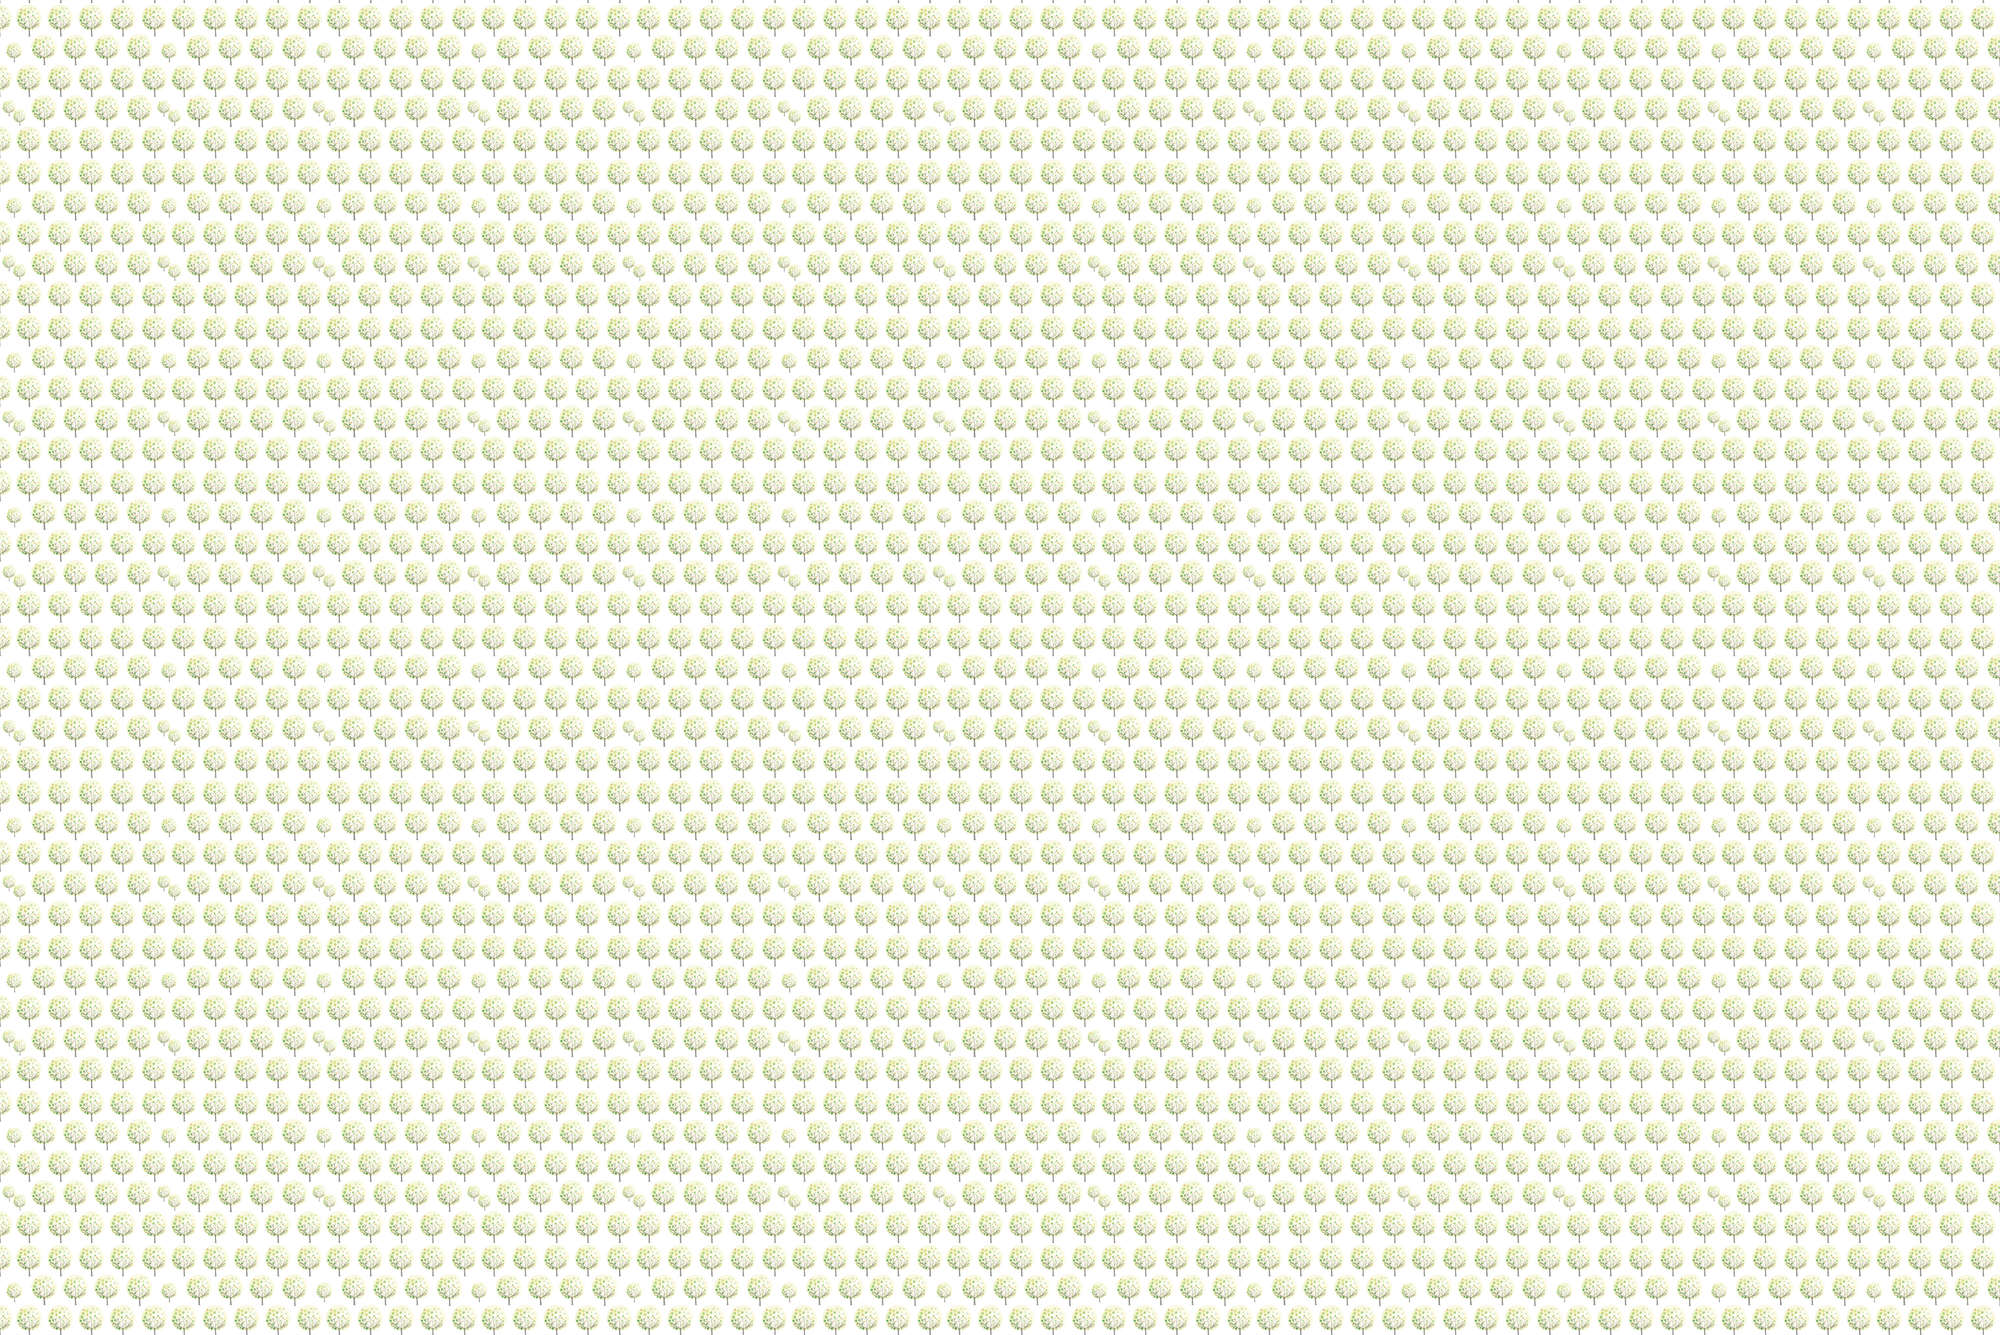             Design Behang Bospatroon in Groen op Witte Achtergrond op Pearl Smooth Fleece
        